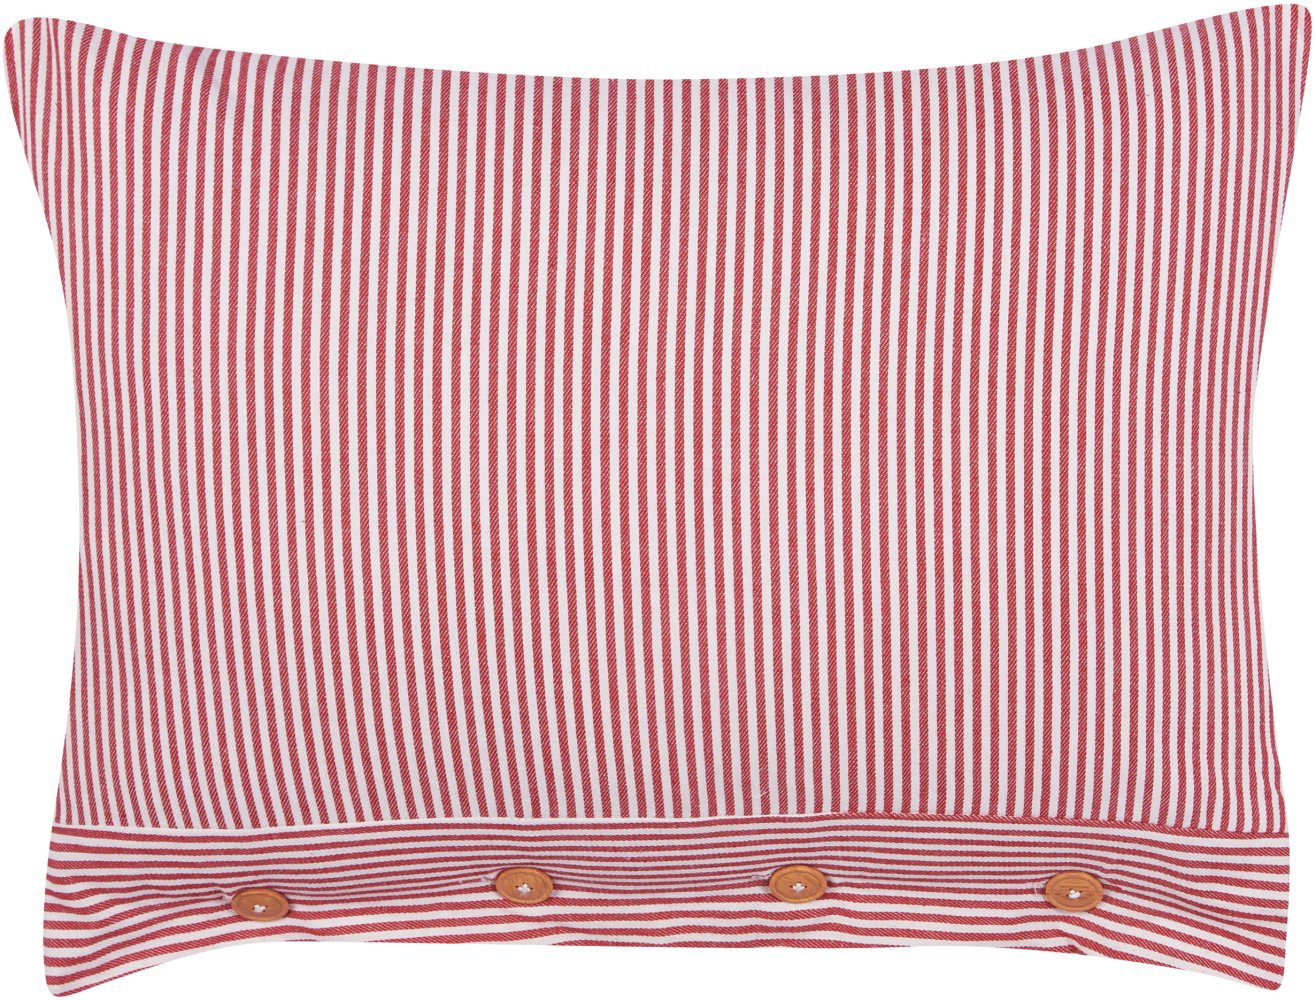 Dekokissen mit Knöpfen Streifenmuster Baumwolle rot weiß 40 x 60 cm AALITA Bild 1